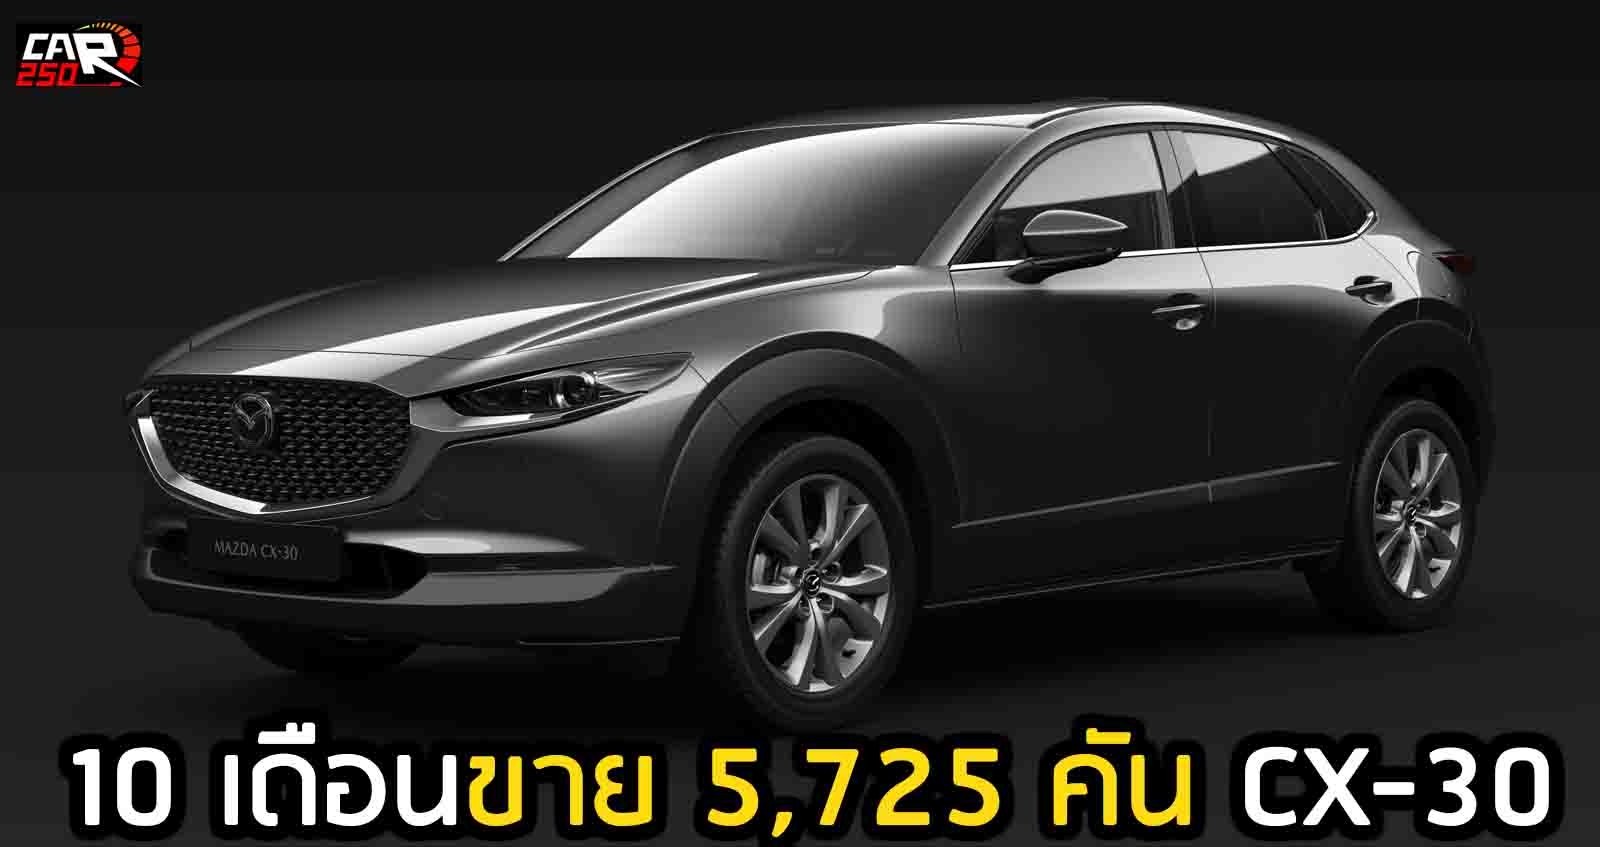 10 เดือนขาย 5,725 คัน Mazda CX-30 ในไทย